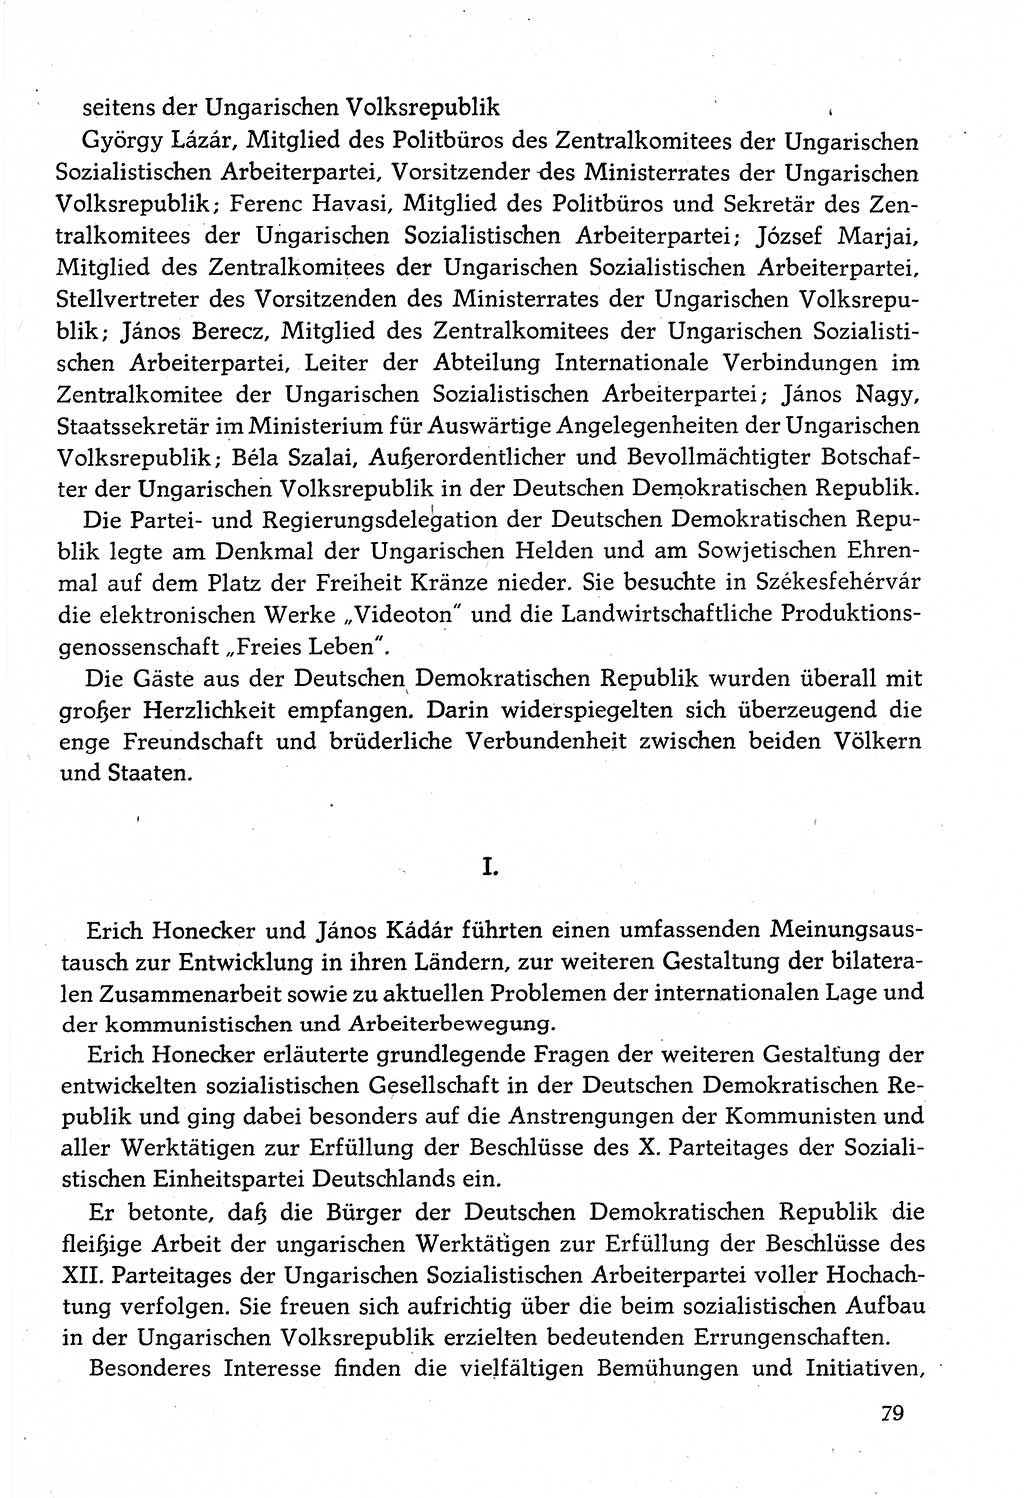 Dokumente der Sozialistischen Einheitspartei Deutschlands (SED) [Deutsche Demokratische Republik (DDR)] 1982-1983, Seite 79 (Dok. SED DDR 1982-1983, S. 79)